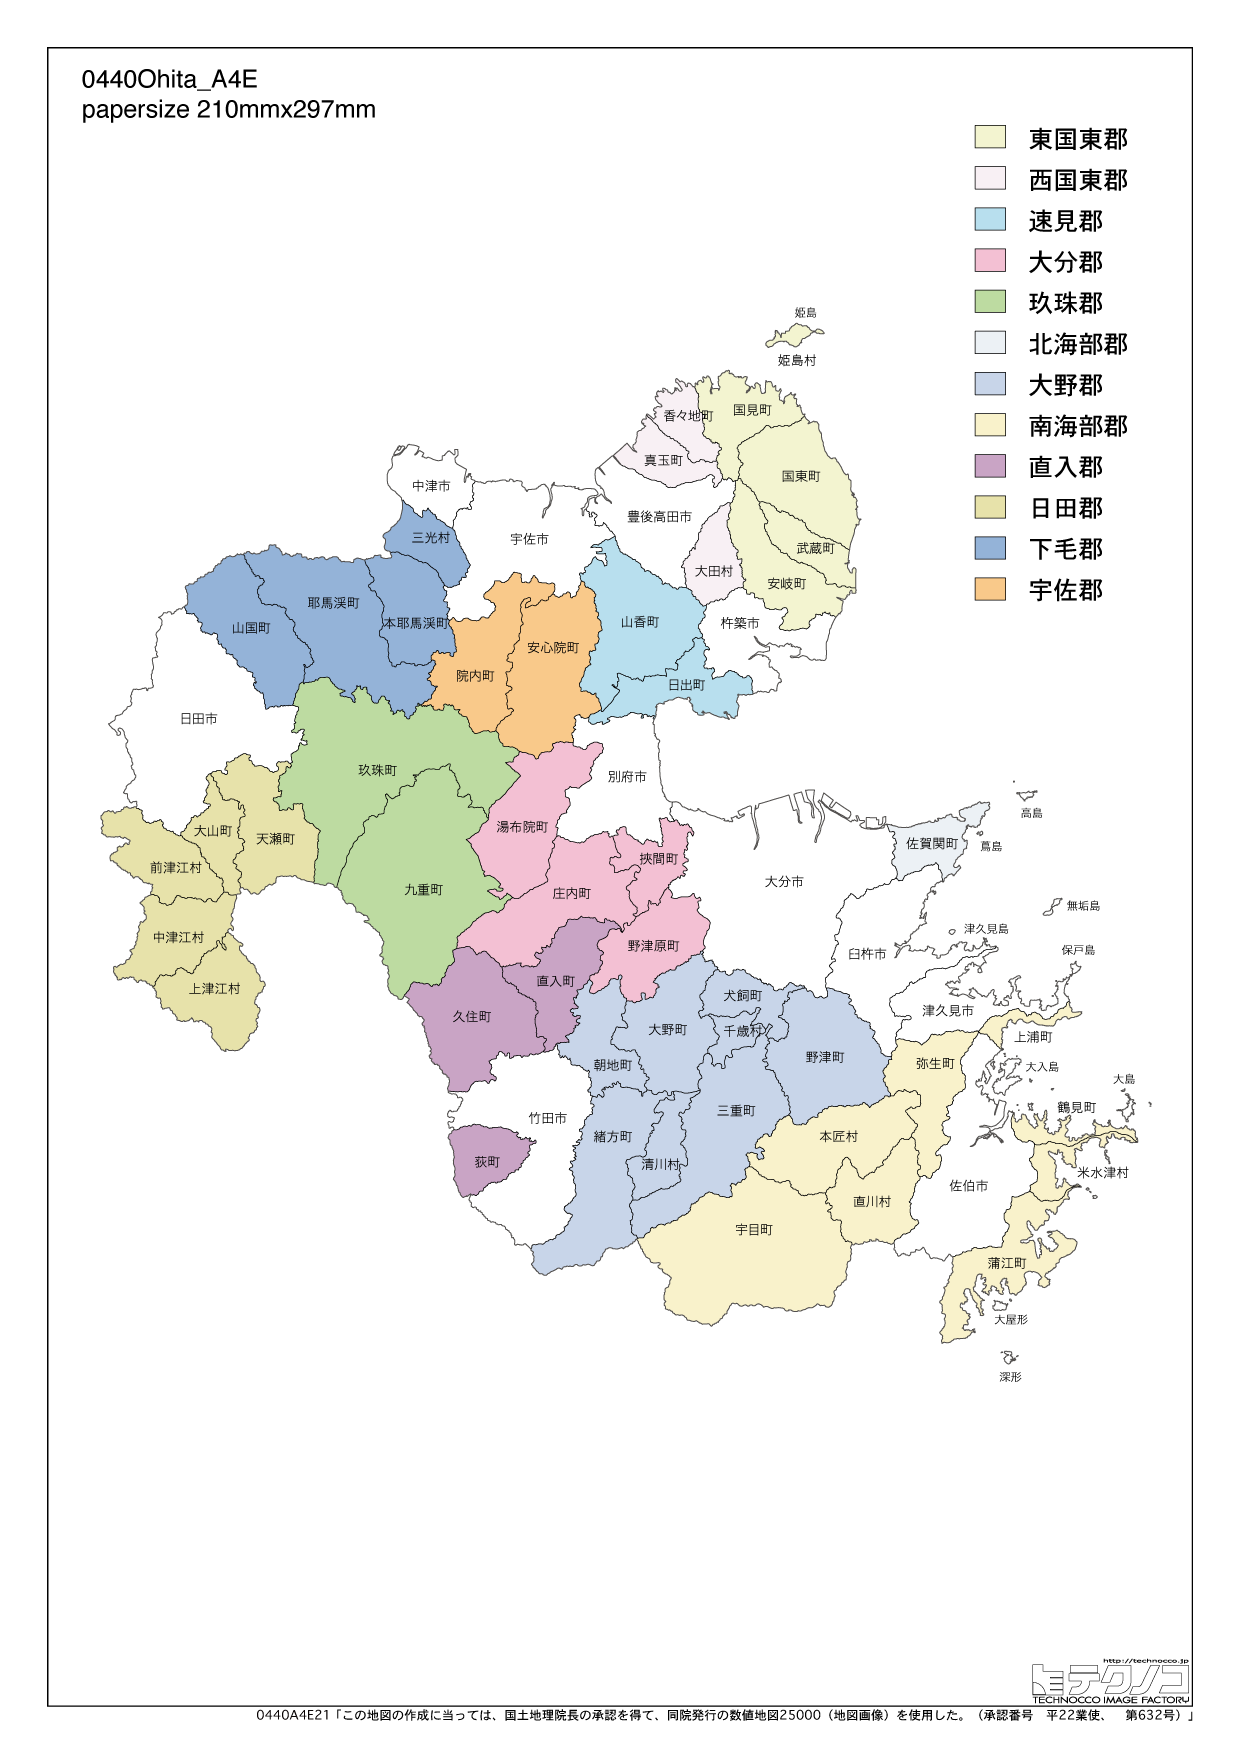 大分県の白地図と市町村の合併情報